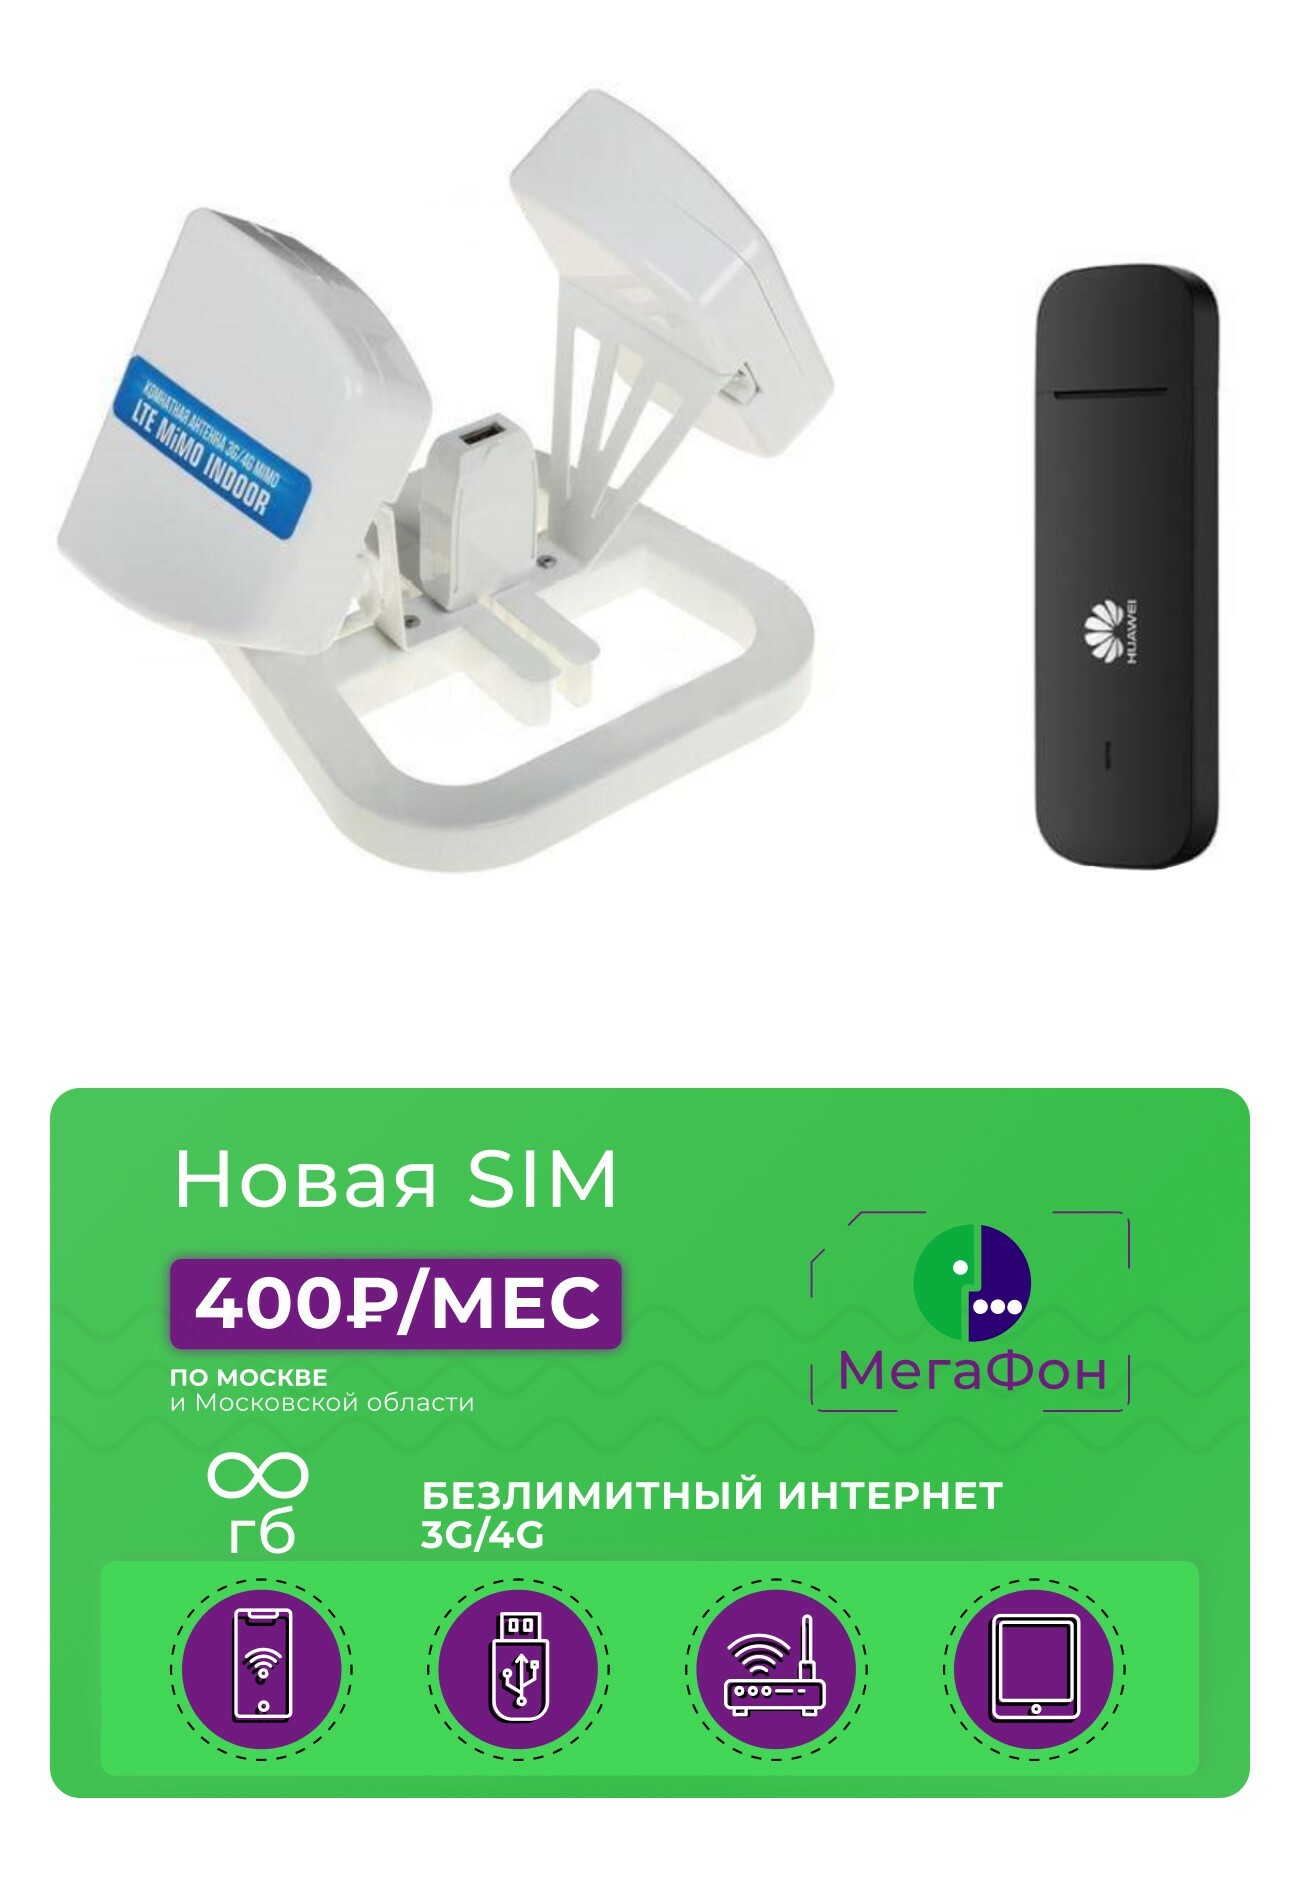 Усилители 3G/4G сигнала для модема - купить по выгодным ценам на rov-hyundai.ru